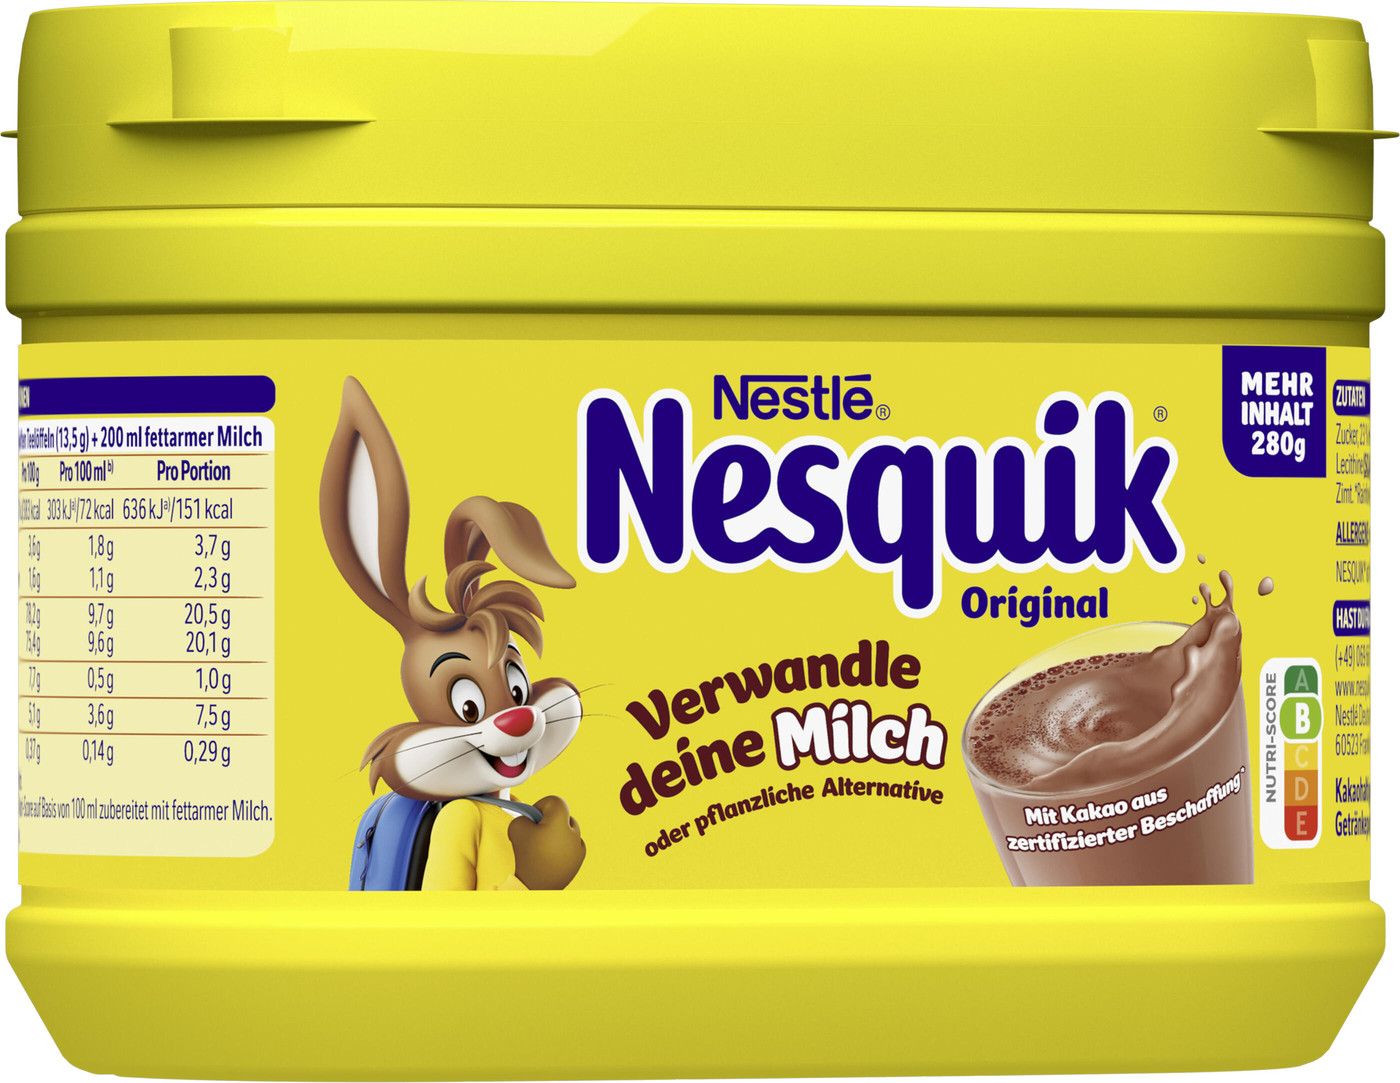 Nestlé Nesquik Original 280G